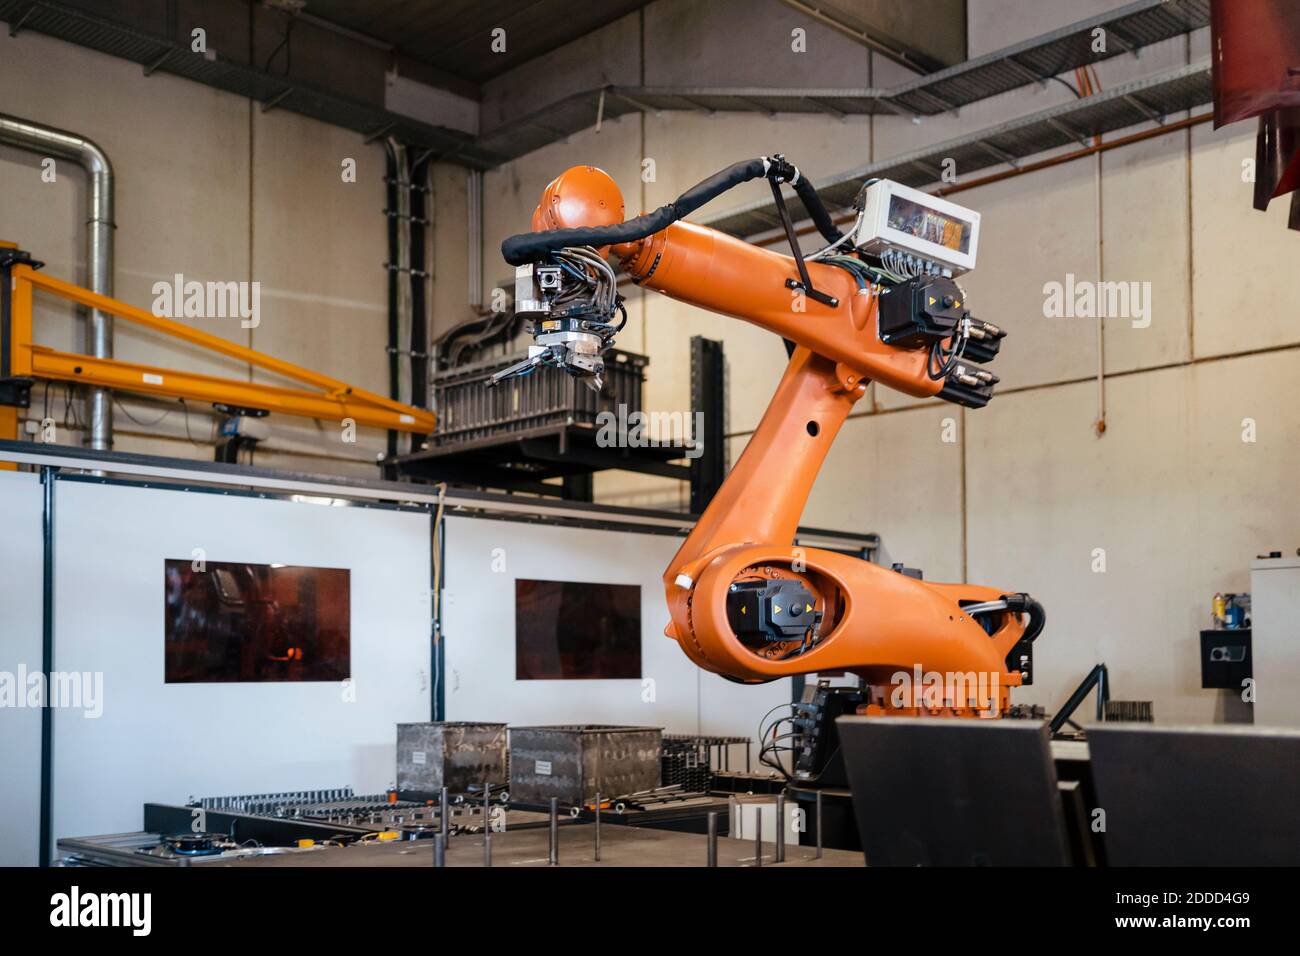 Industrial robots welding in factory Stock Photo